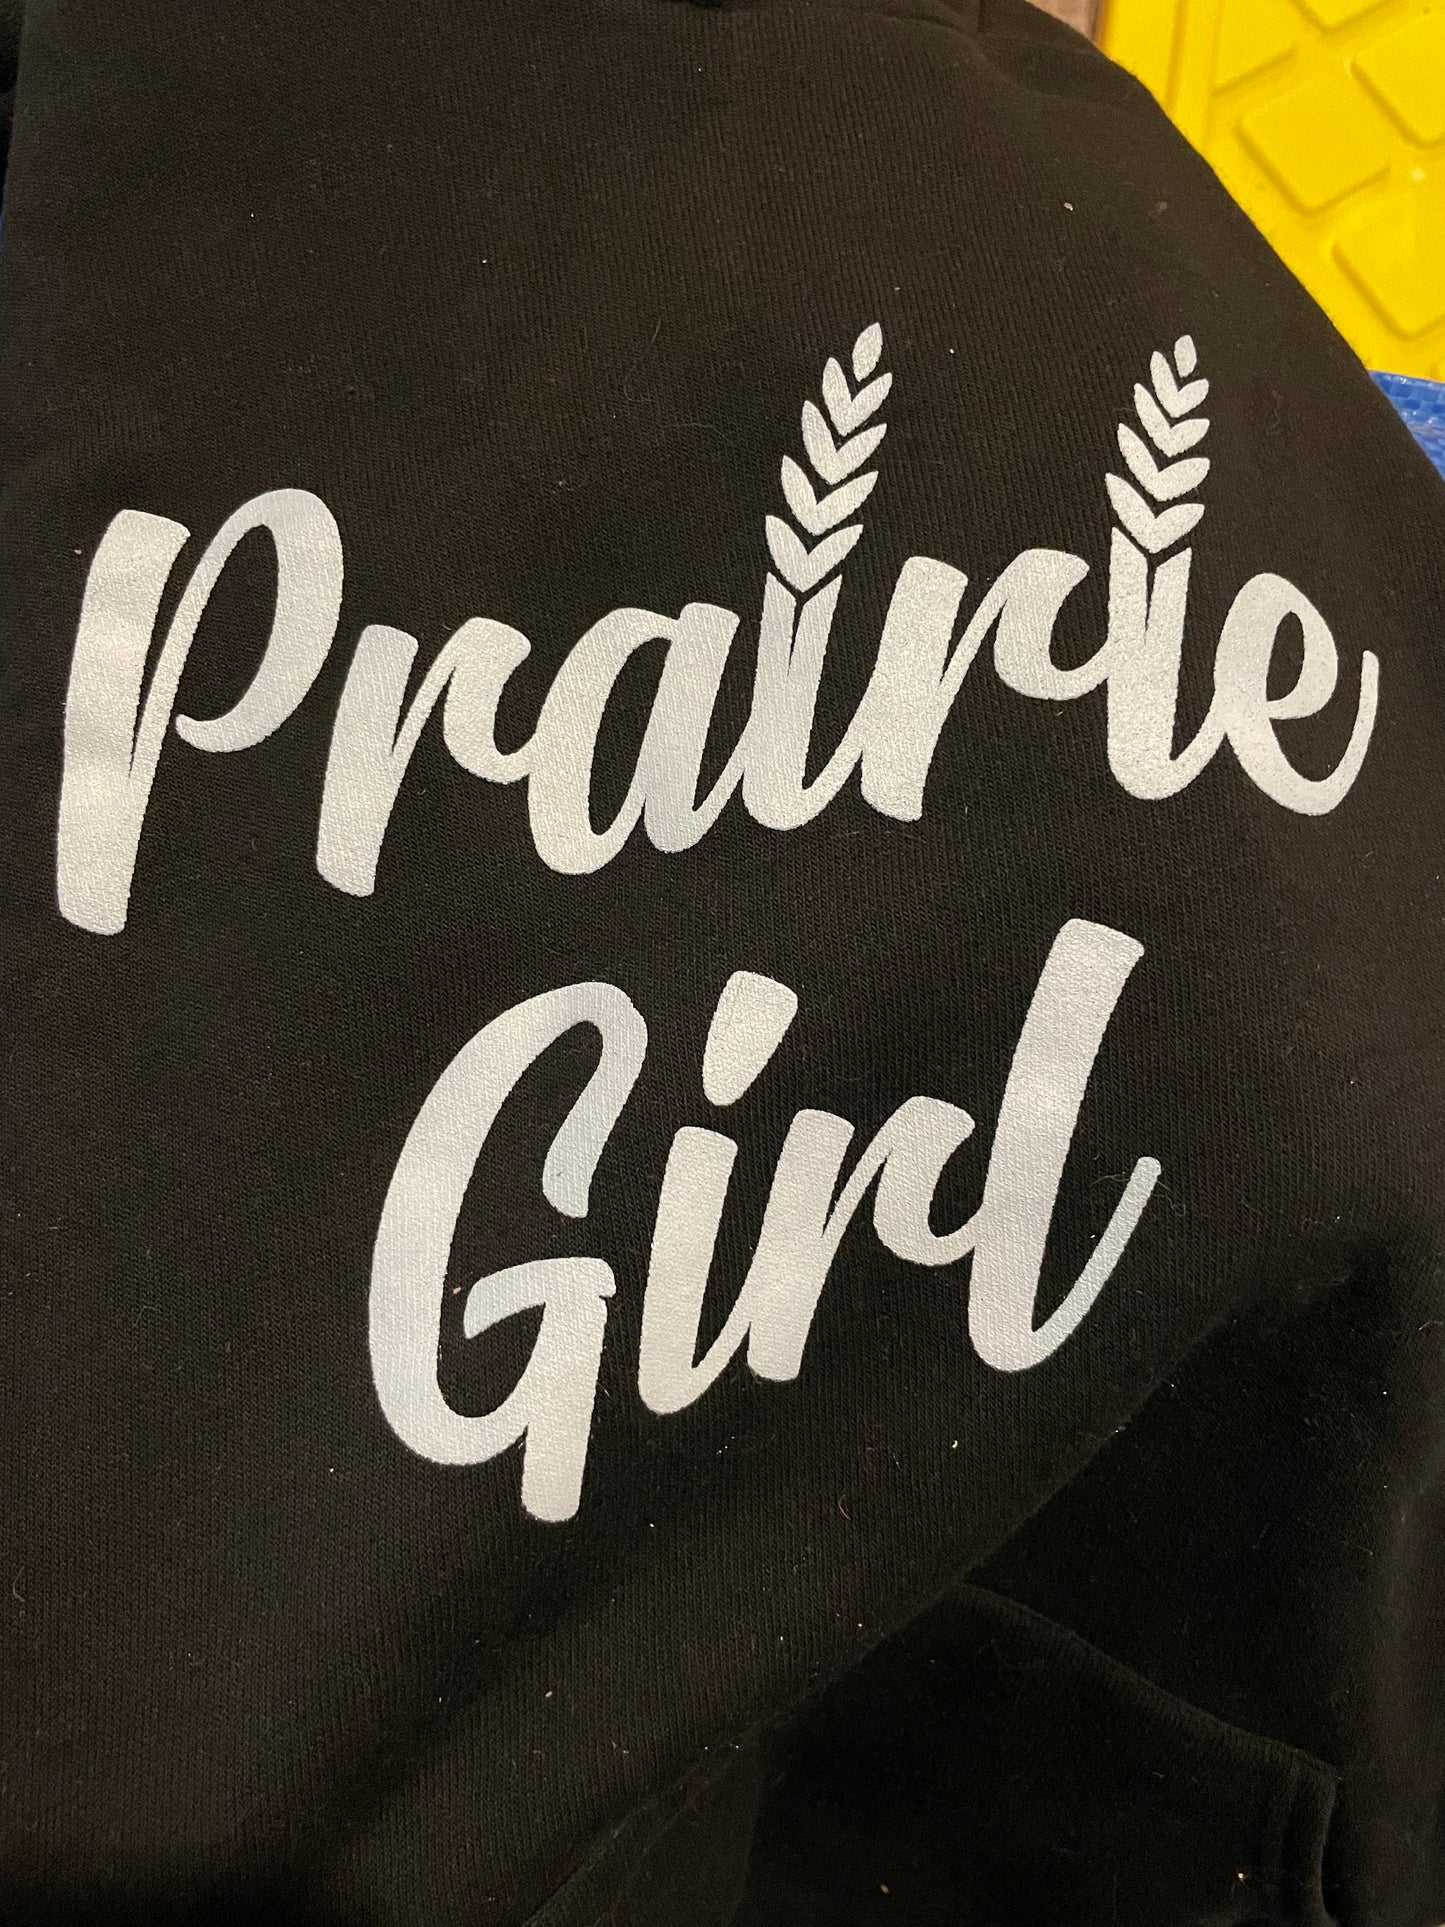 Prairie Girl Hoodie